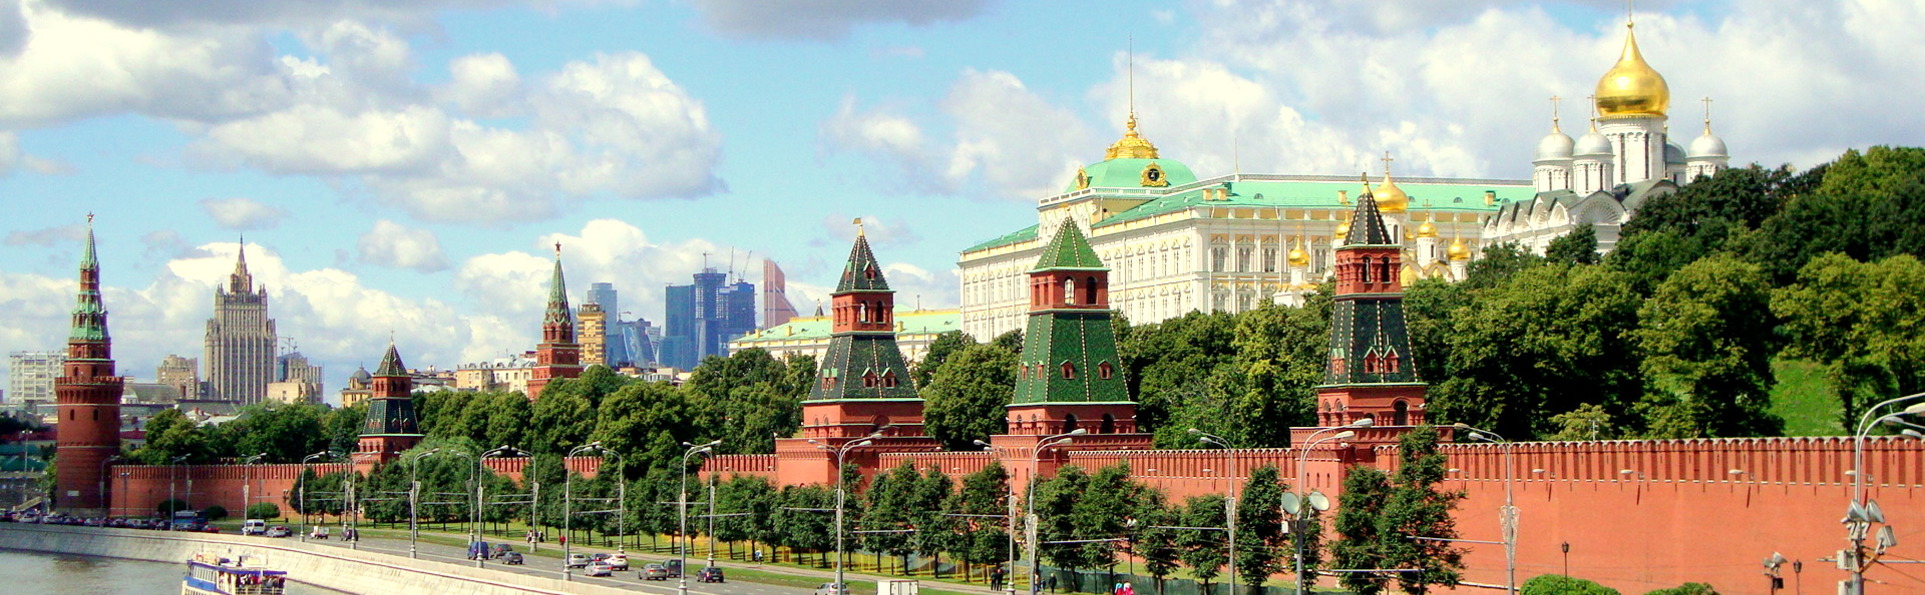 莫斯科租车、圣彼得堡租客车吧、
莫斯科租客车吧、
圣彼得堡租旅行车、
莫斯科租旅行车、
圣彼得堡租微型汽车、
莫斯科租微型车。	 